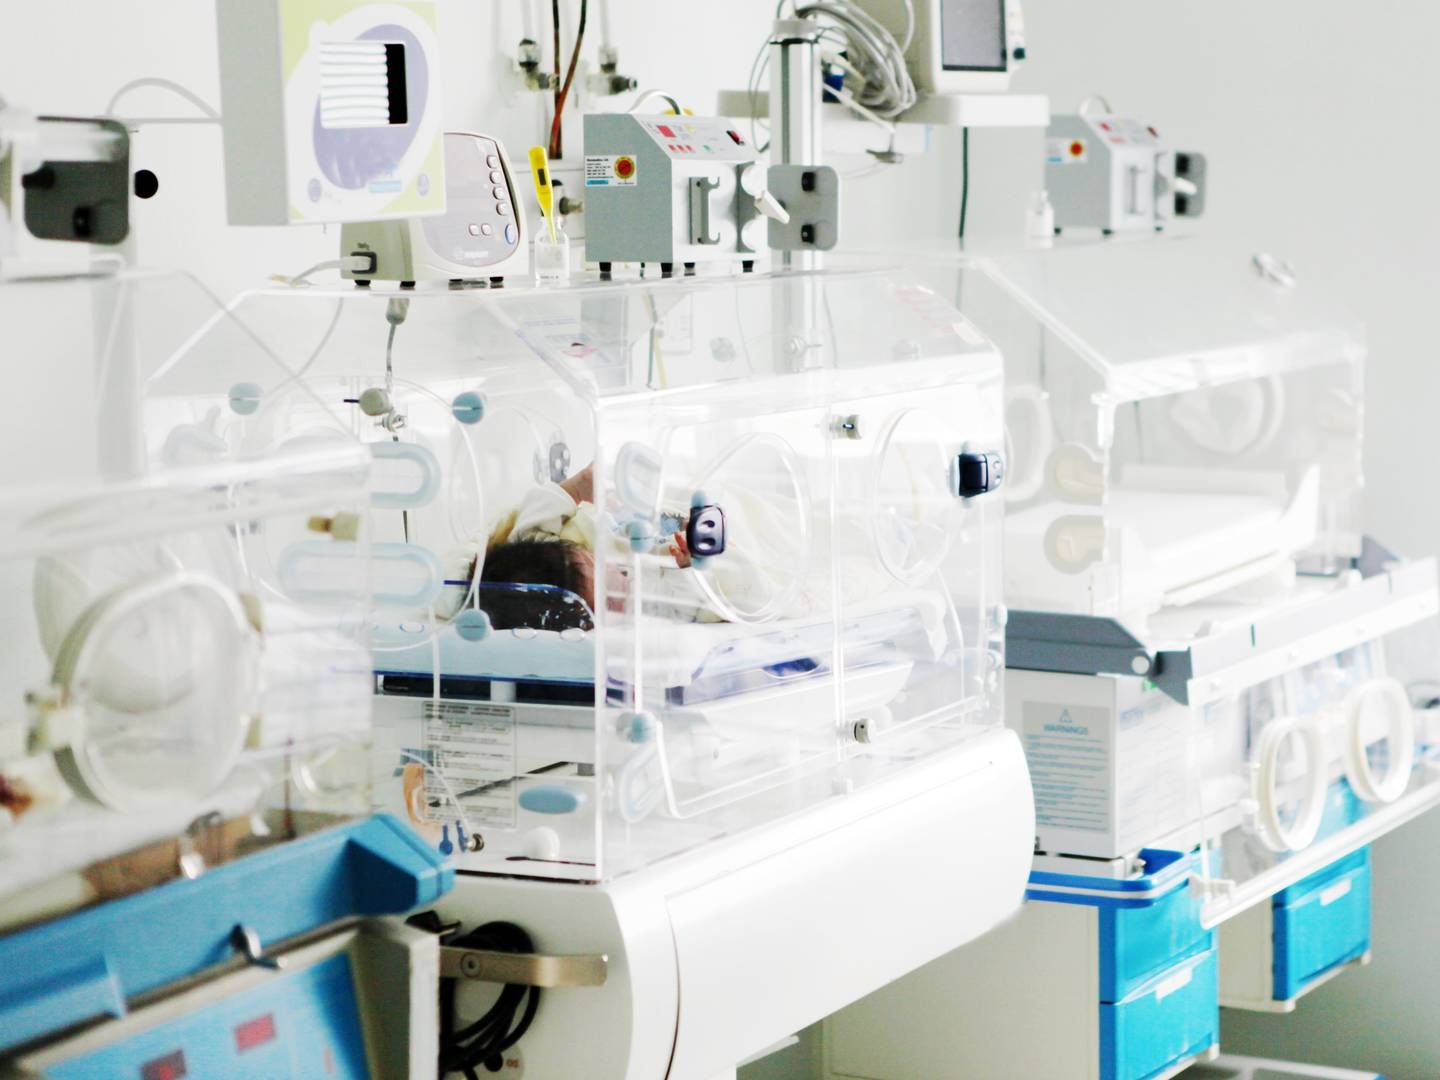 MÅ IMPROVISERE: Direktør Marc Gewillig for pediatrisk kardiologi ved Universitetssykehuset Leuven i Belgia sier han er nødt til å improvisere medisinske prosedyrer på babyer som følge av utstyrsmangel. | Foto: Illustrasjonsfoto: Colourbox